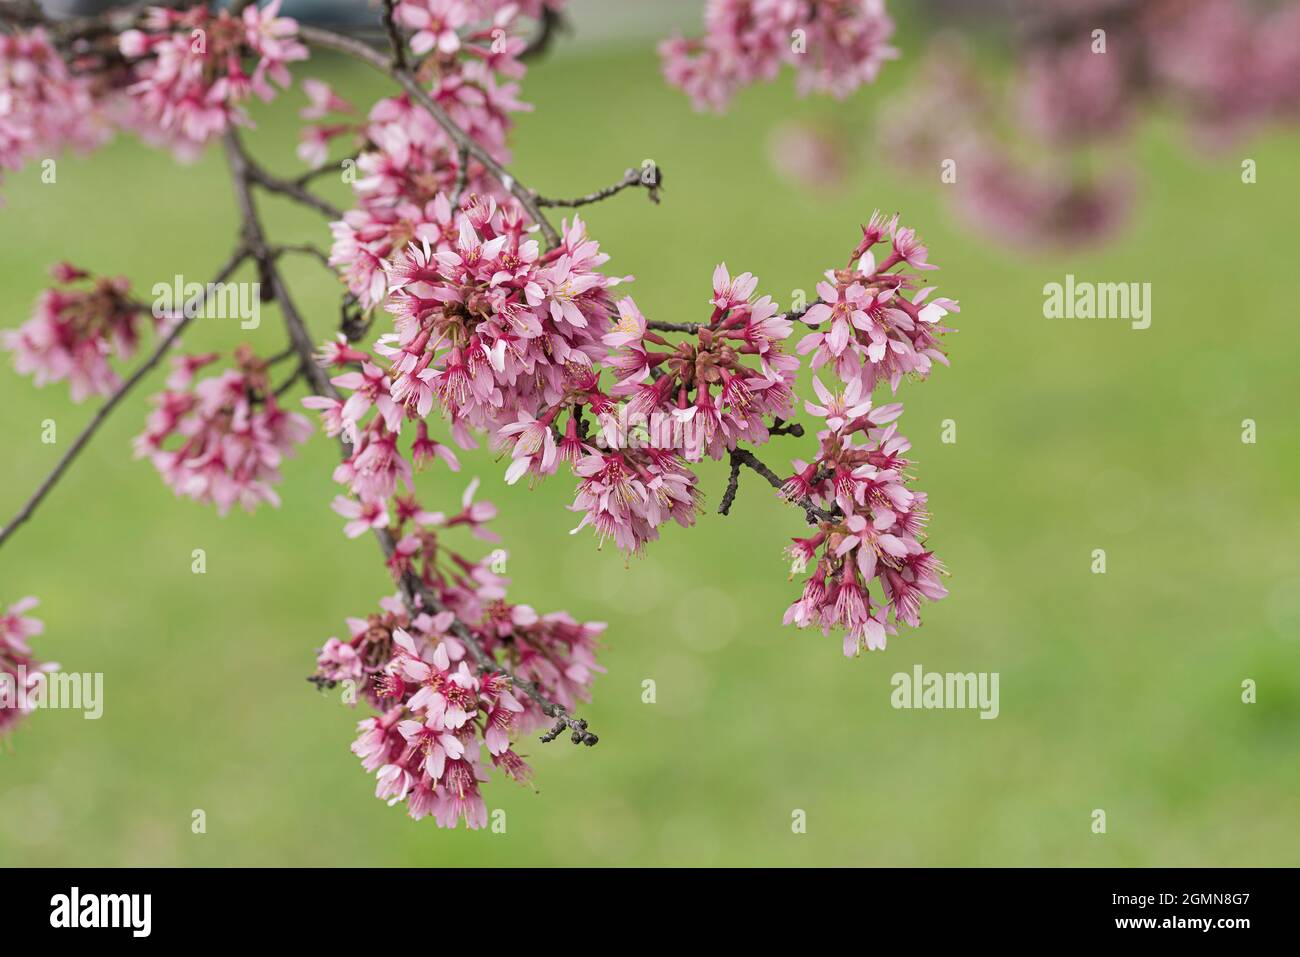 Cerezo de otoño, Cerezo de invierno (Prunus subhirtella 'Okame', Prunus subhirtella Okame), flores de cultivar Okame Foto de stock